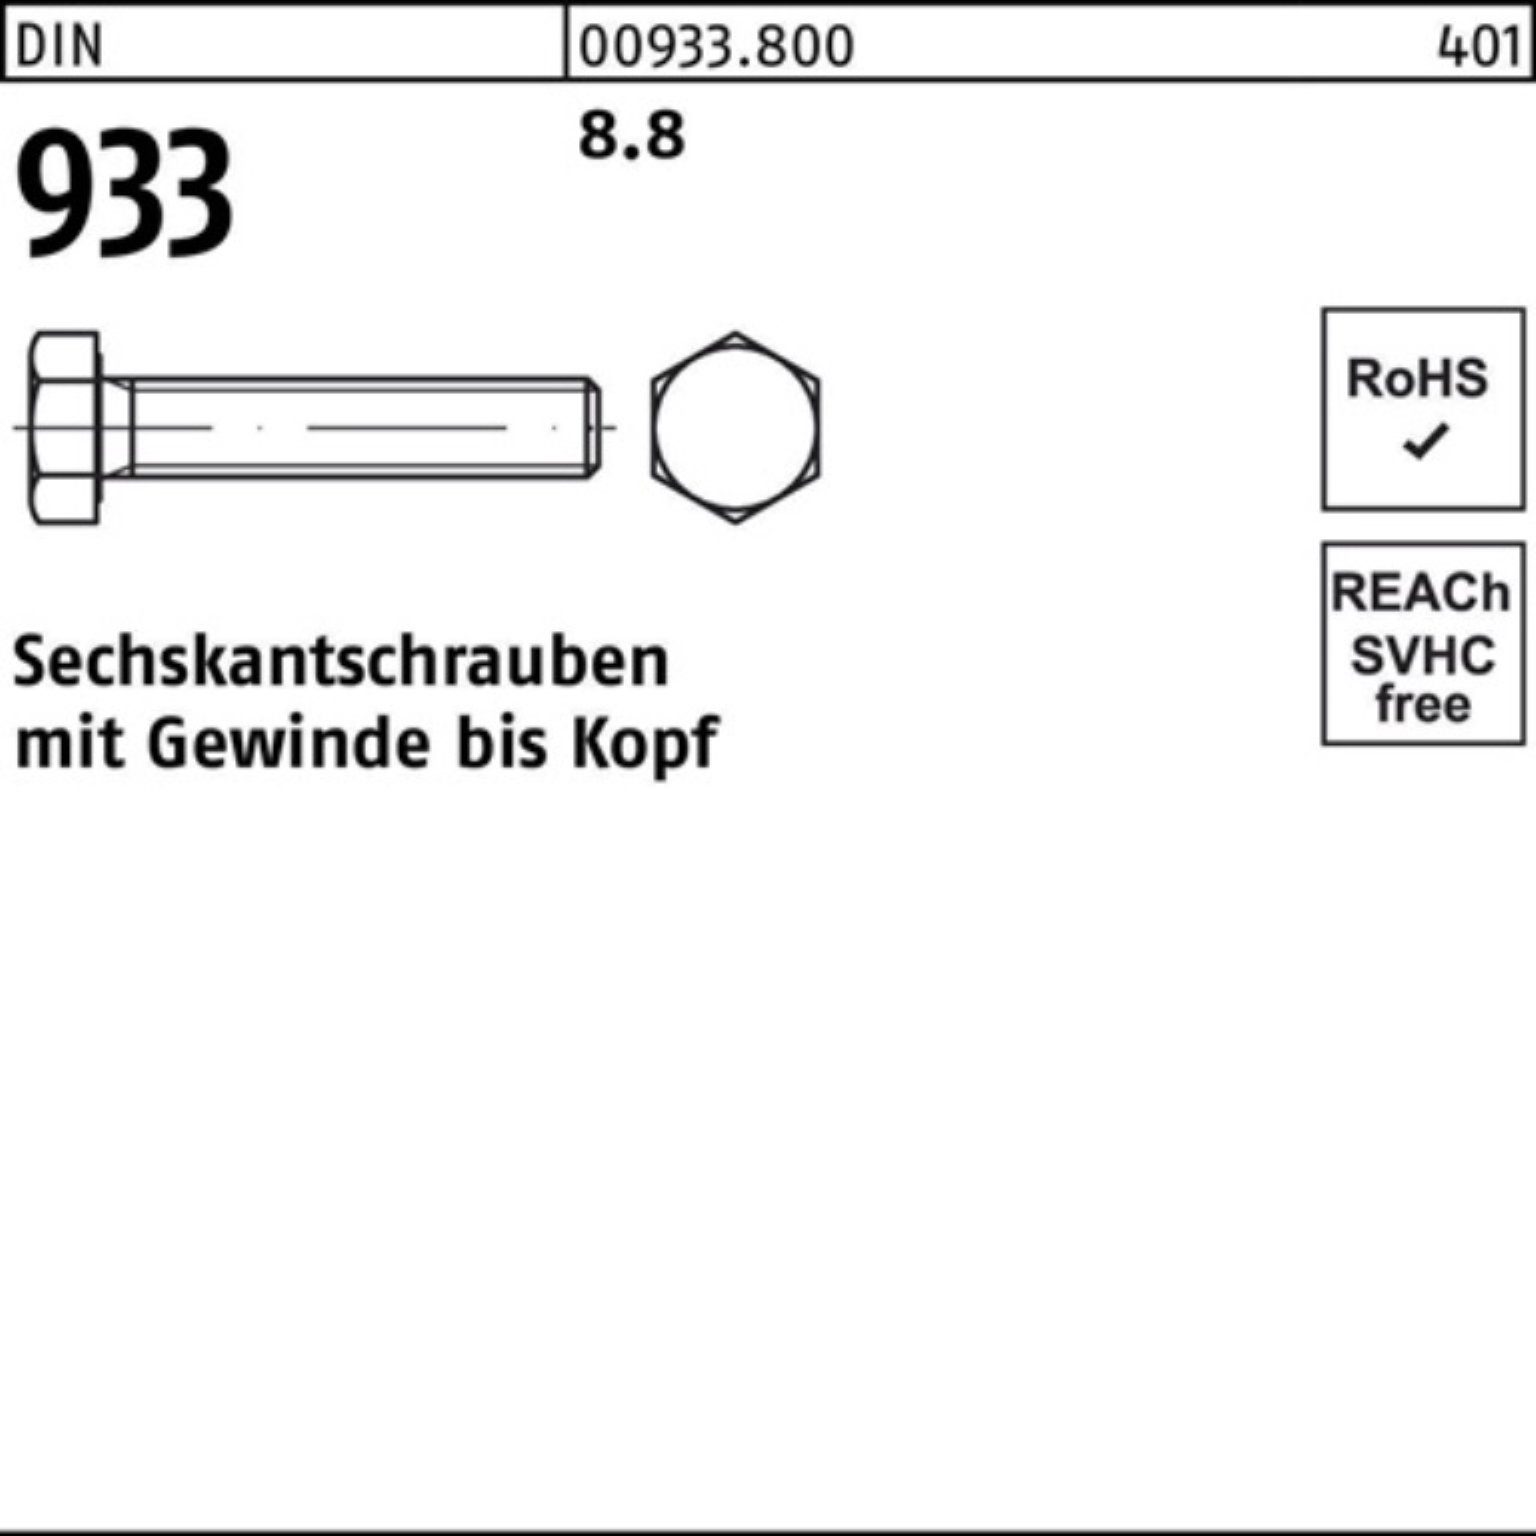 M22x DIN Sechskantschraube Stück 933 30 Sechskantschraube 933 DIN 100er Reyher Pack VG 25 8.8